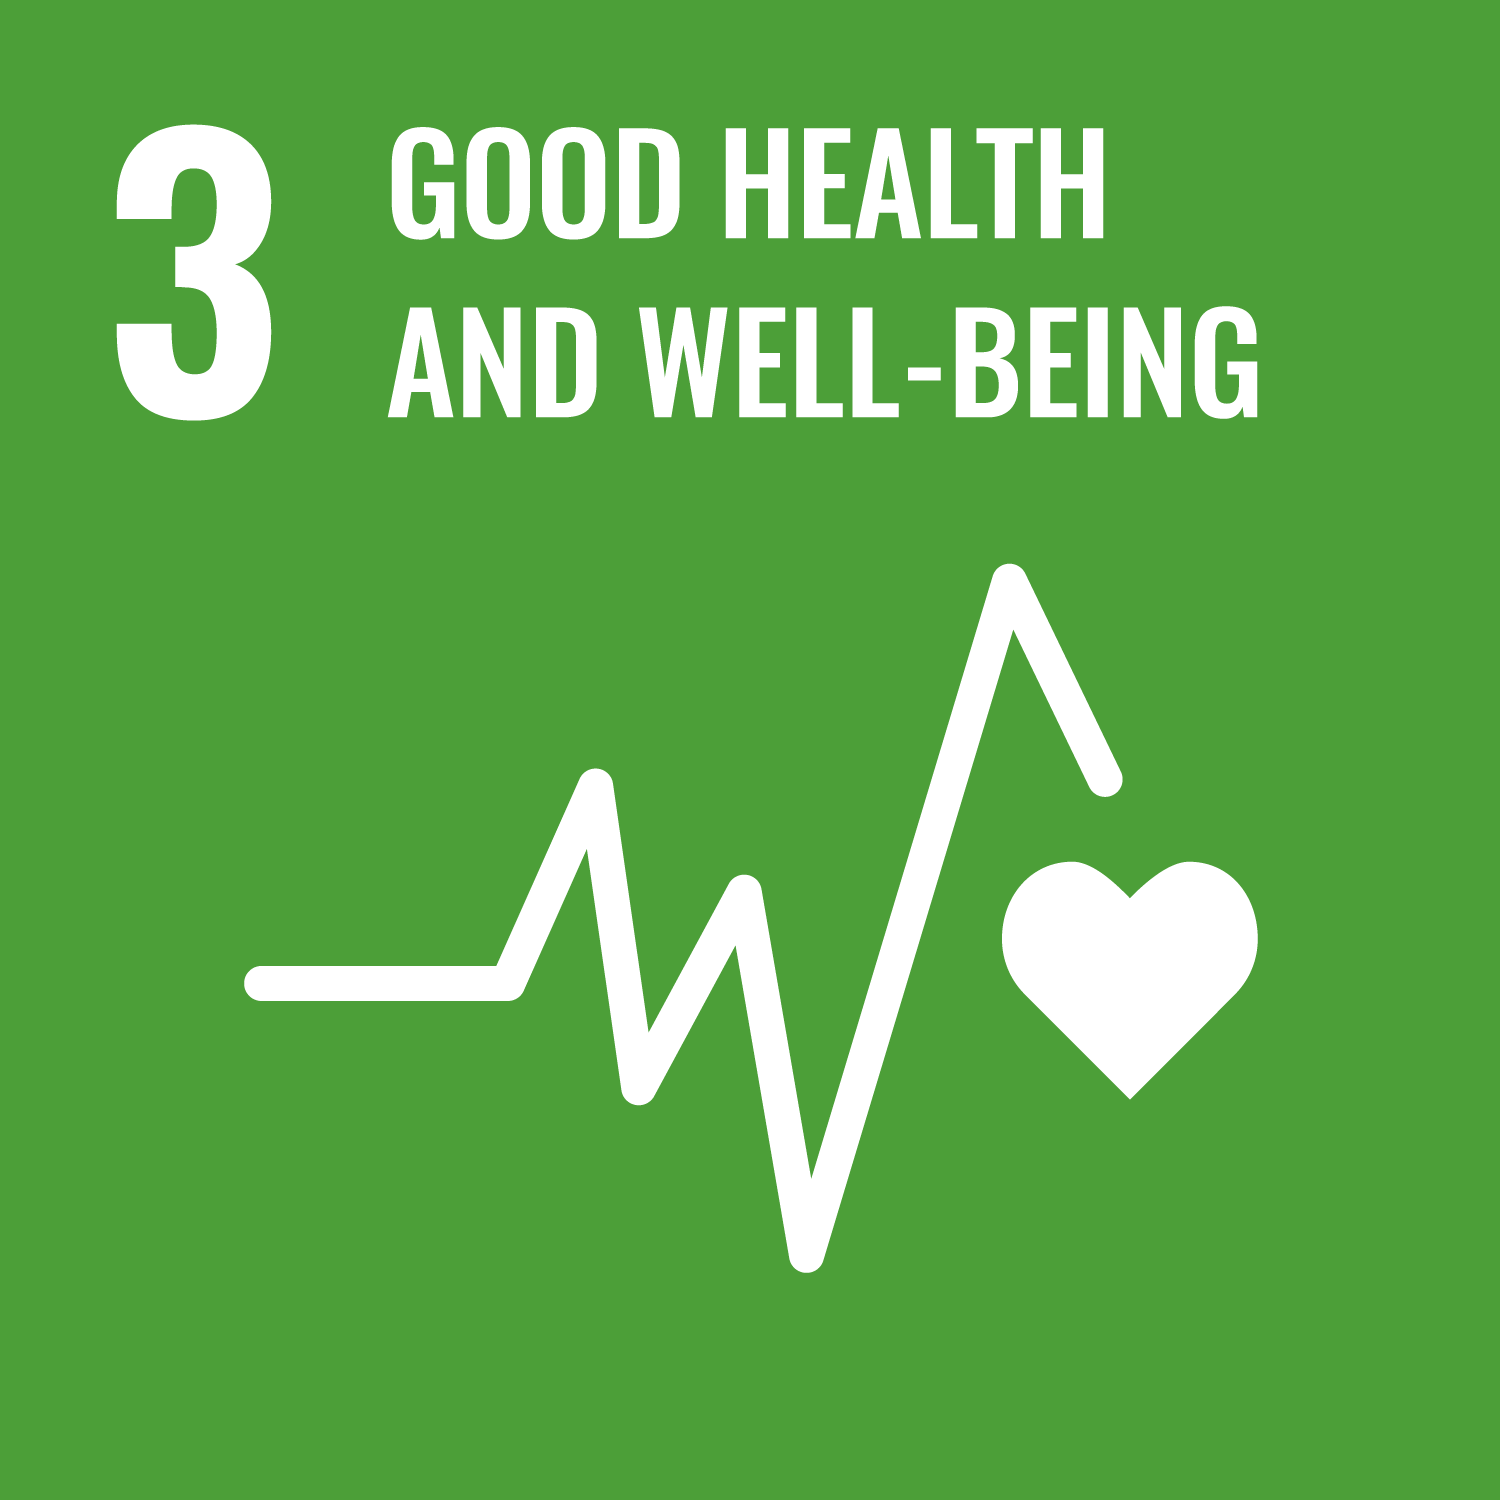 UN-Nachhaltigkeitsziel 3: Gesundheit und Wohlergehen